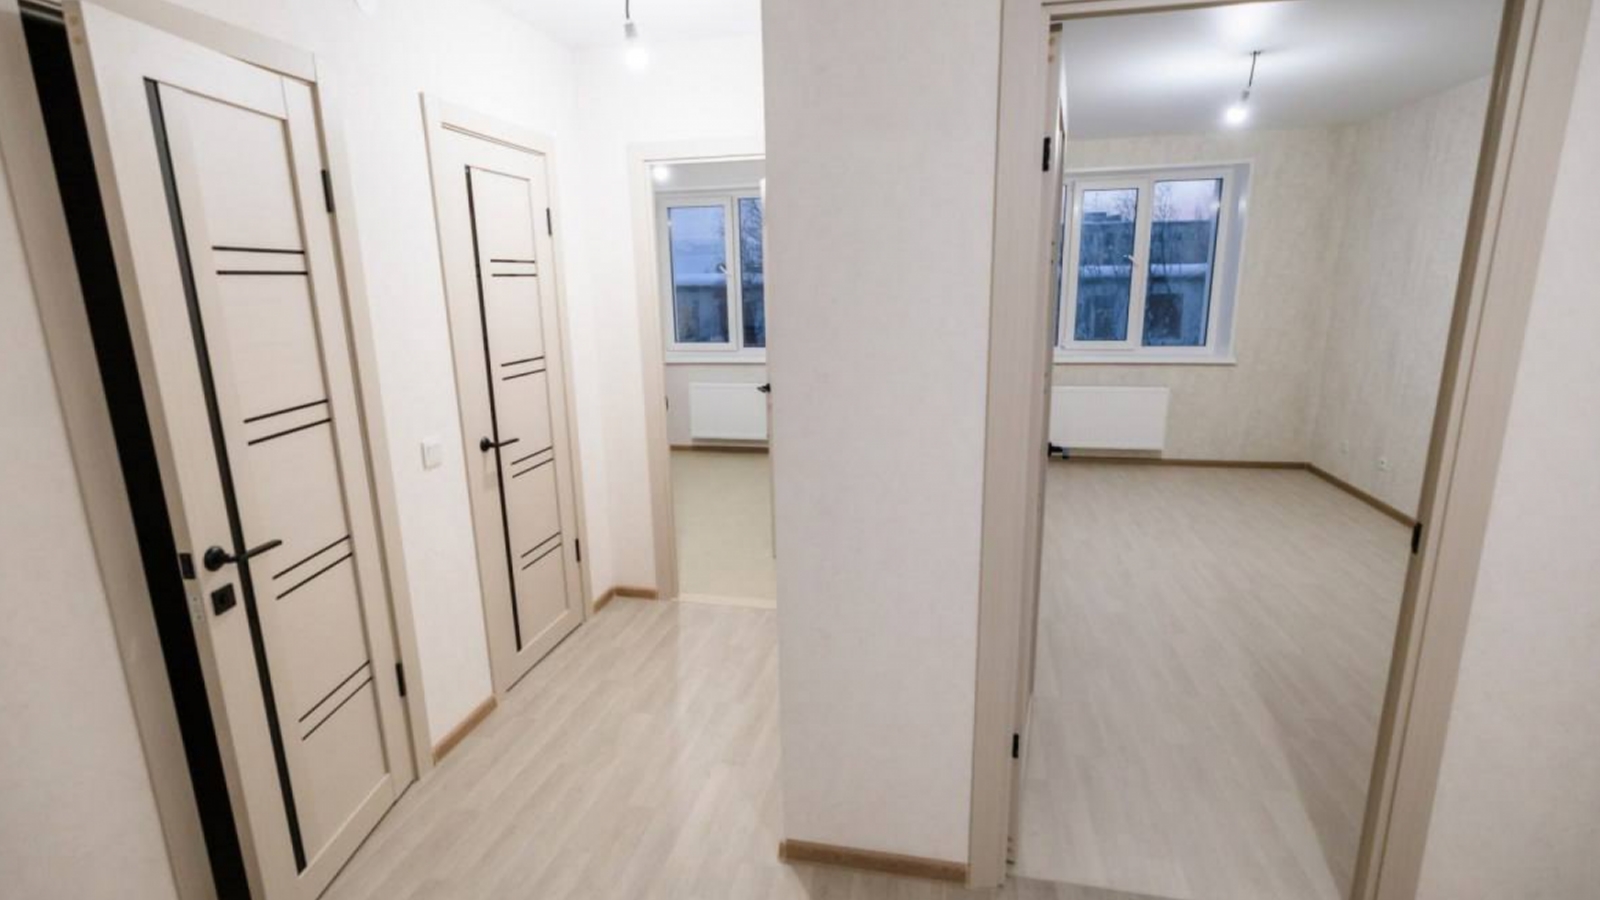 Переселенцы из новостройки на Бредова распродают квартиры 